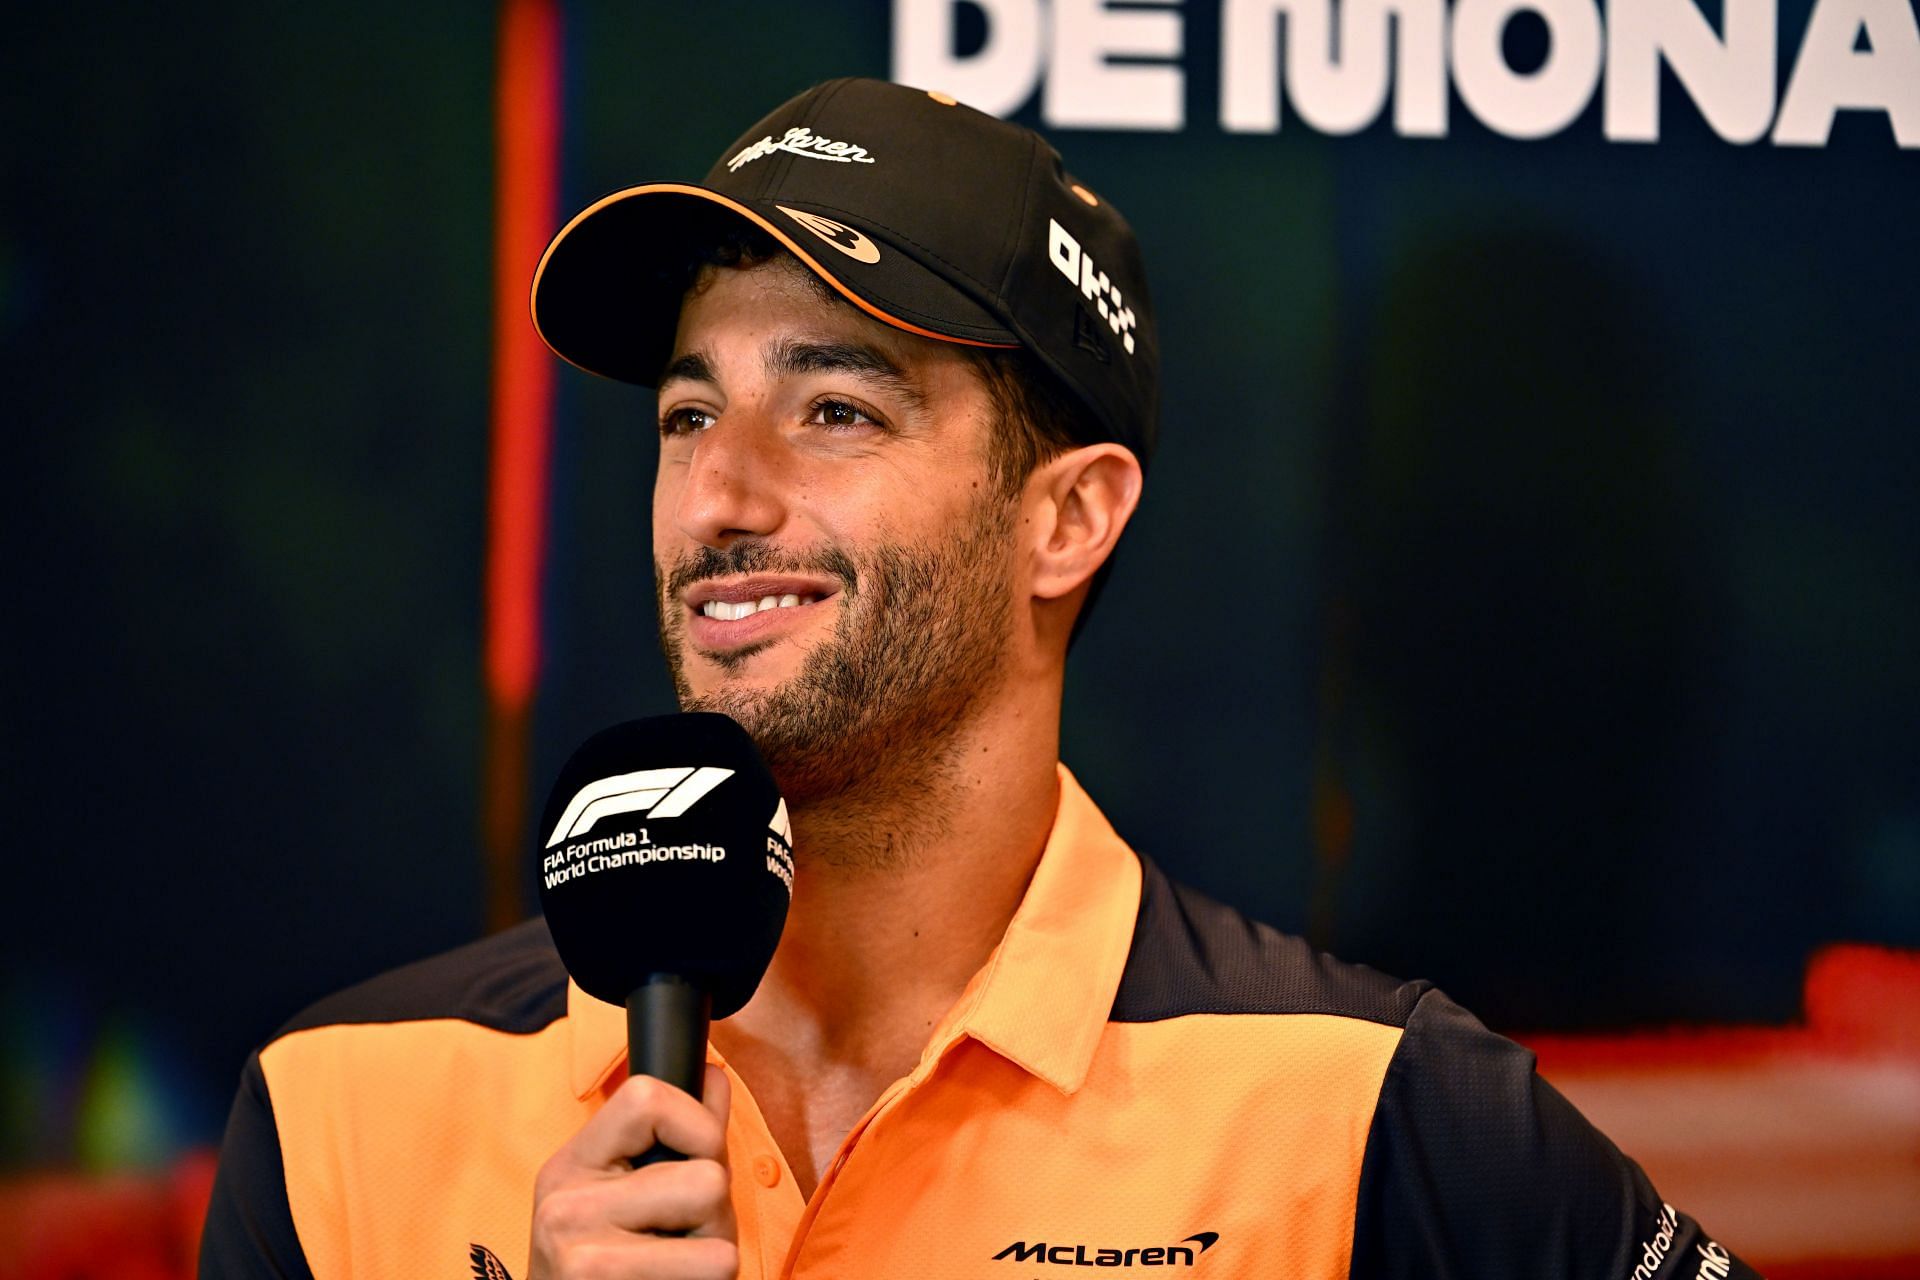 Daniel Ricciardo at the F1 Grand Prix of Monaco - Practice